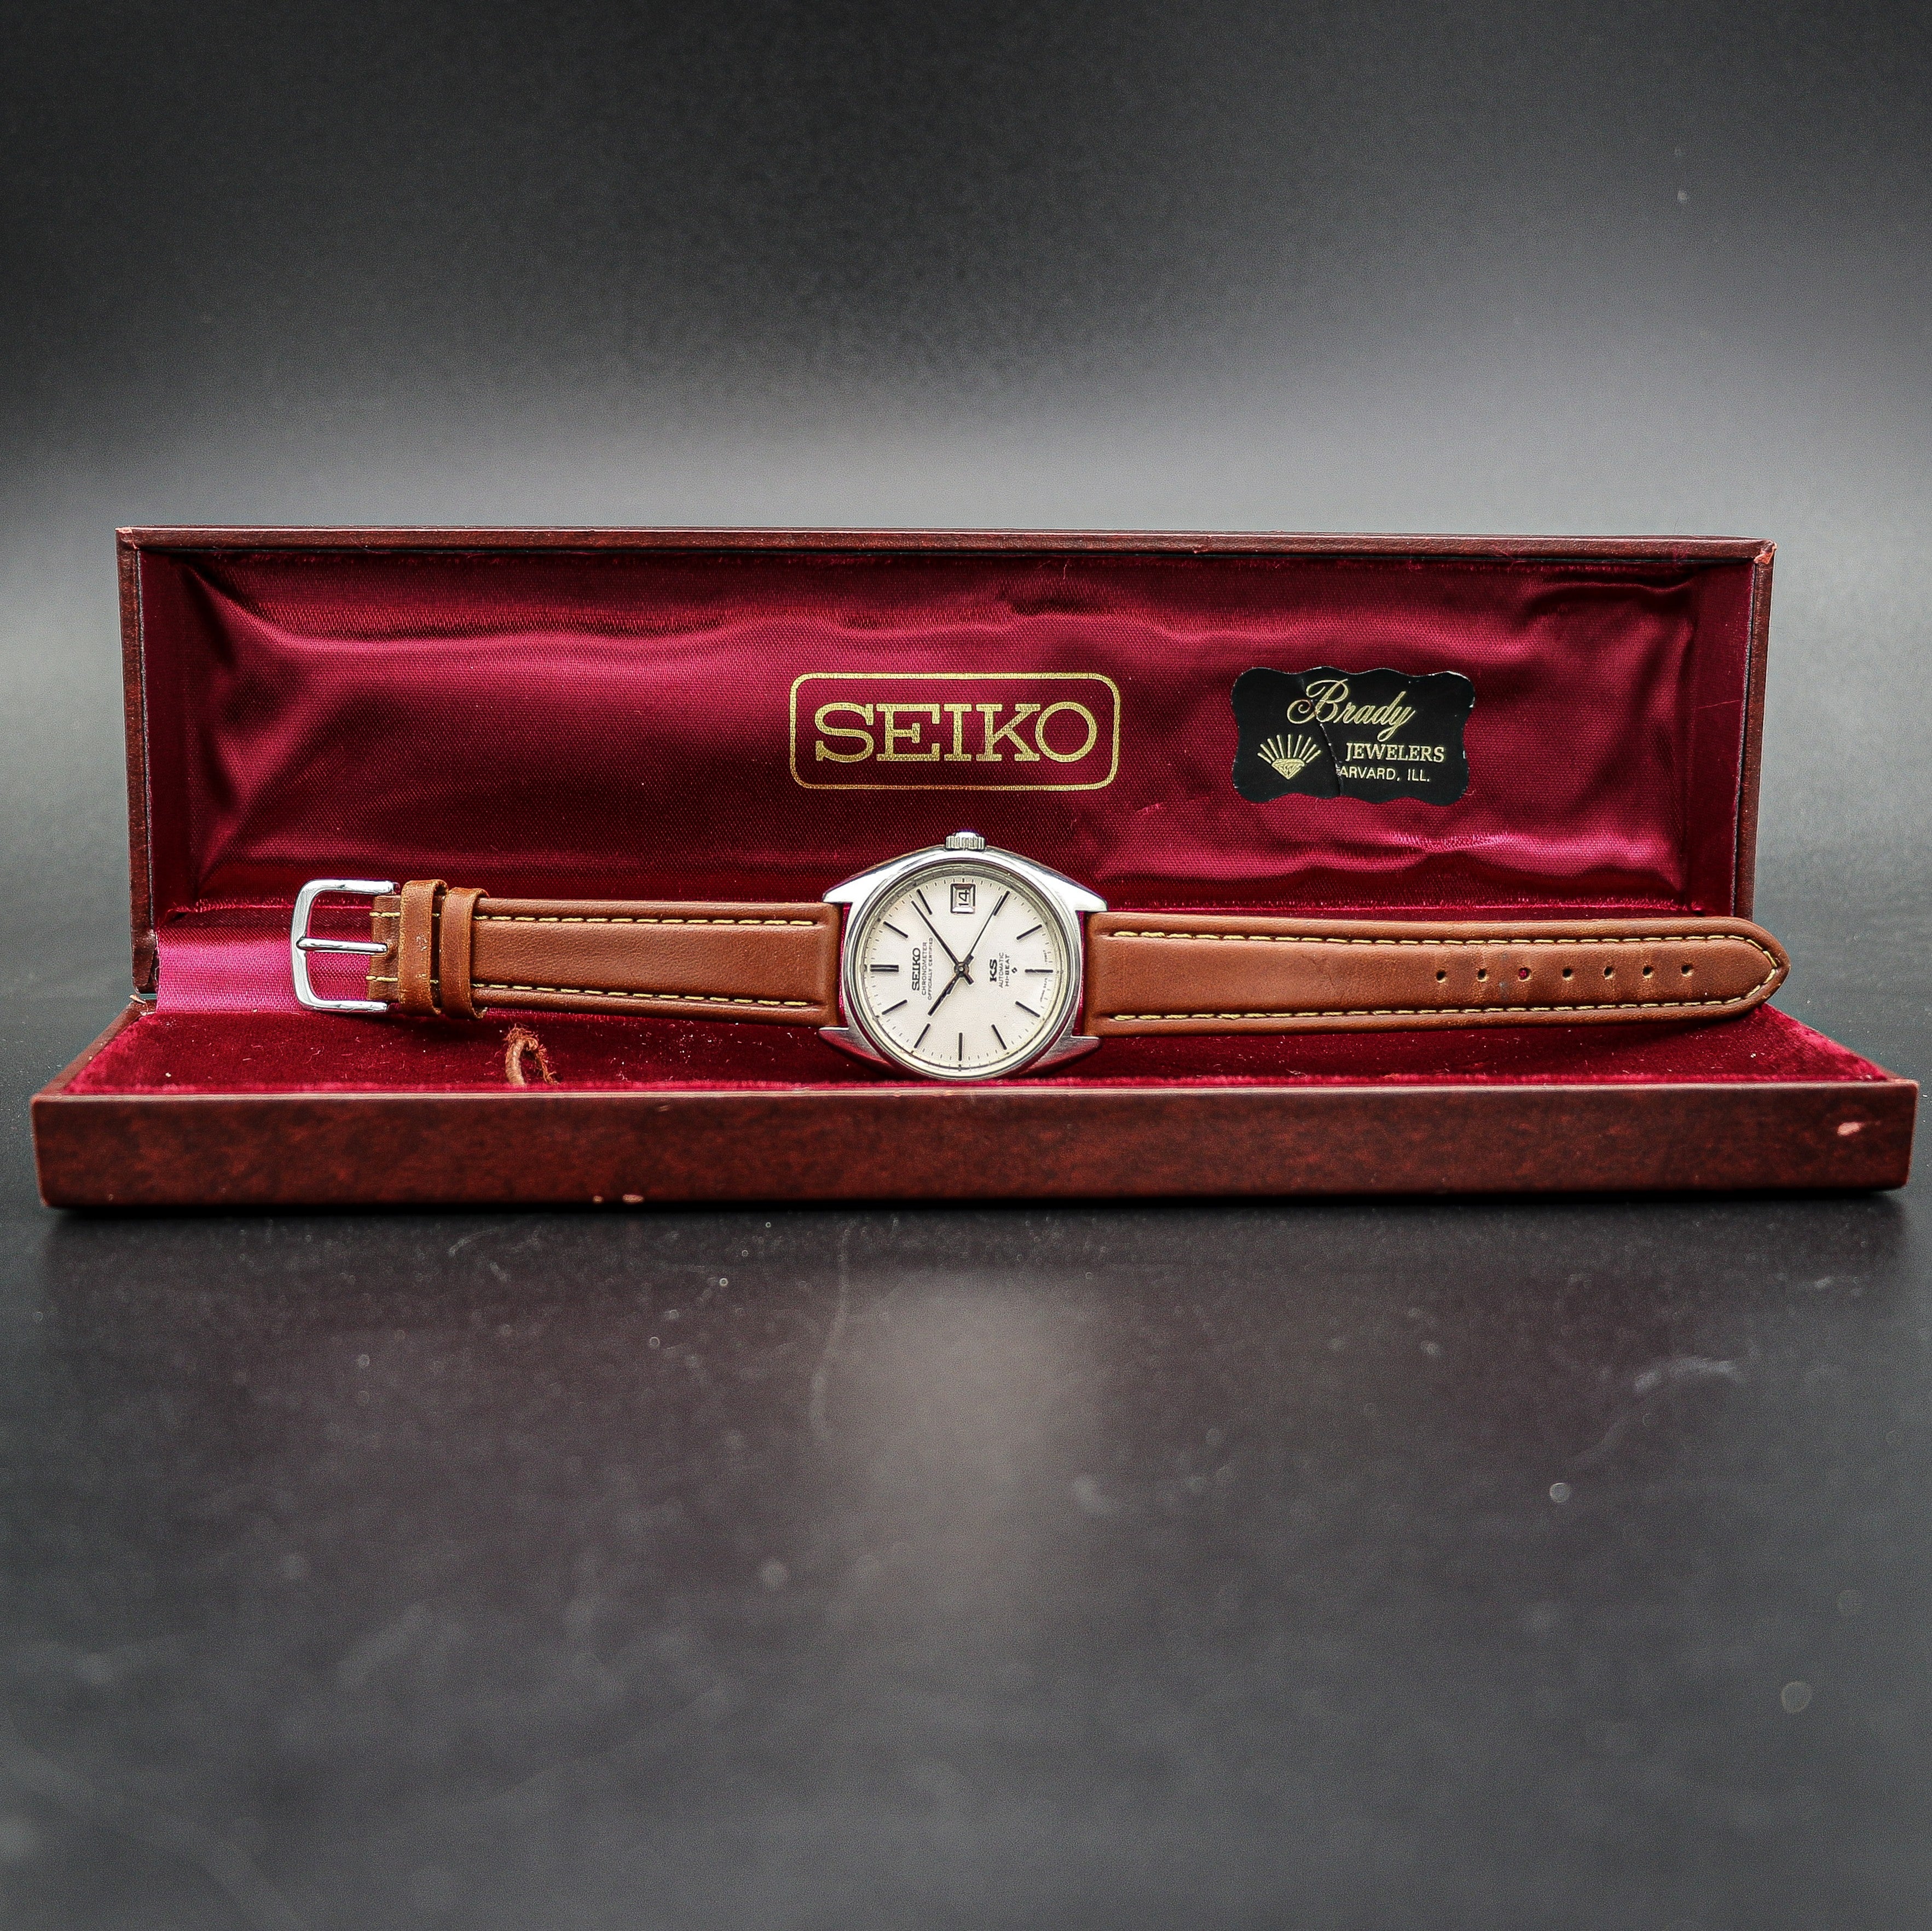 1972 Seiko King Seiko Certified Chronometer 5625 7060